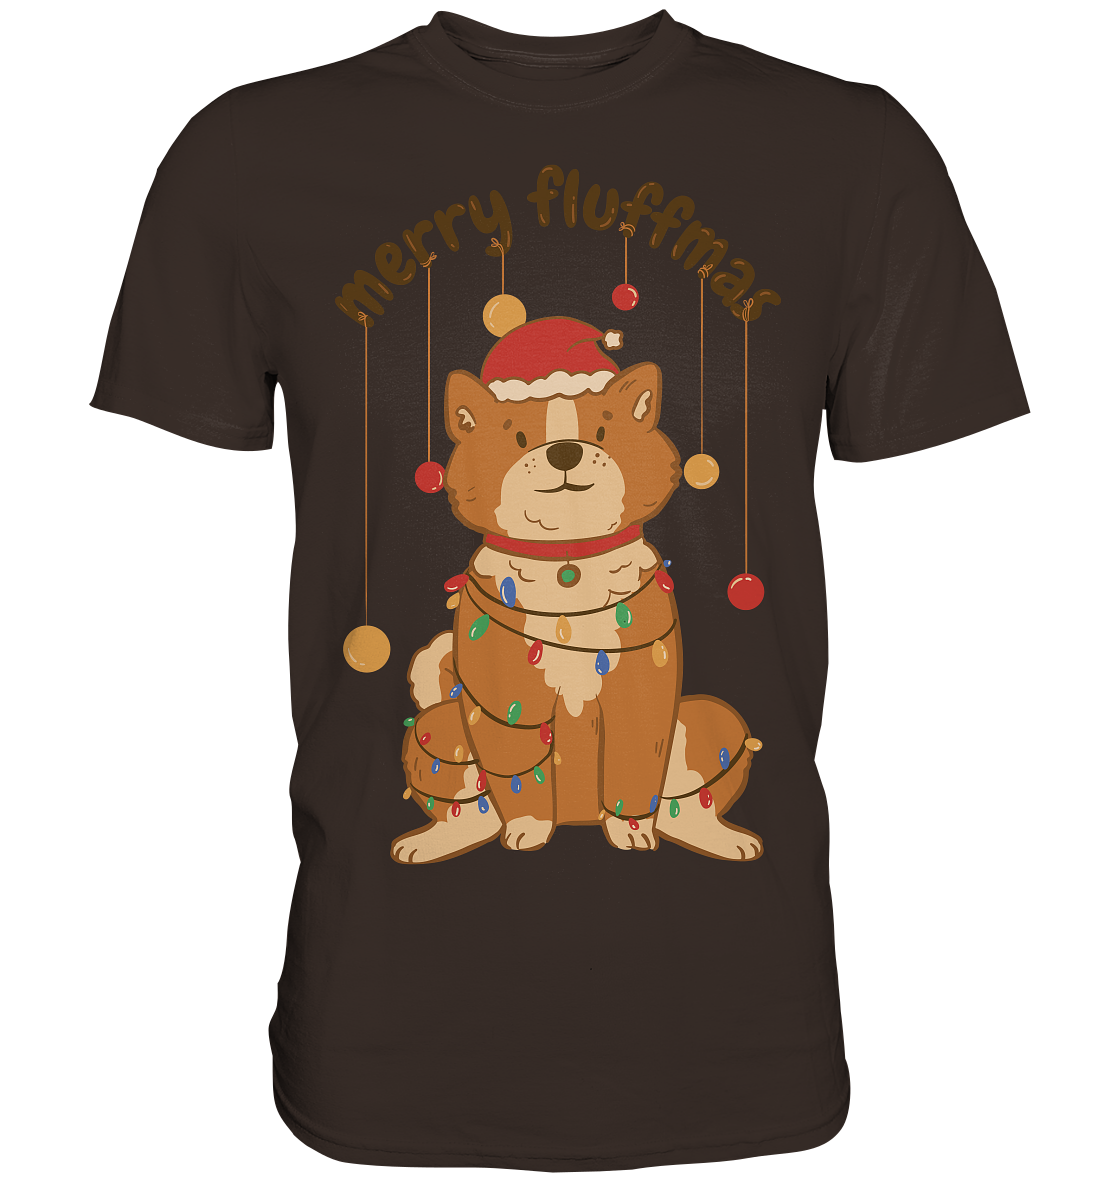 Weihnachtliches Motiv Fun Merry Fluffmas - Premium Shirt